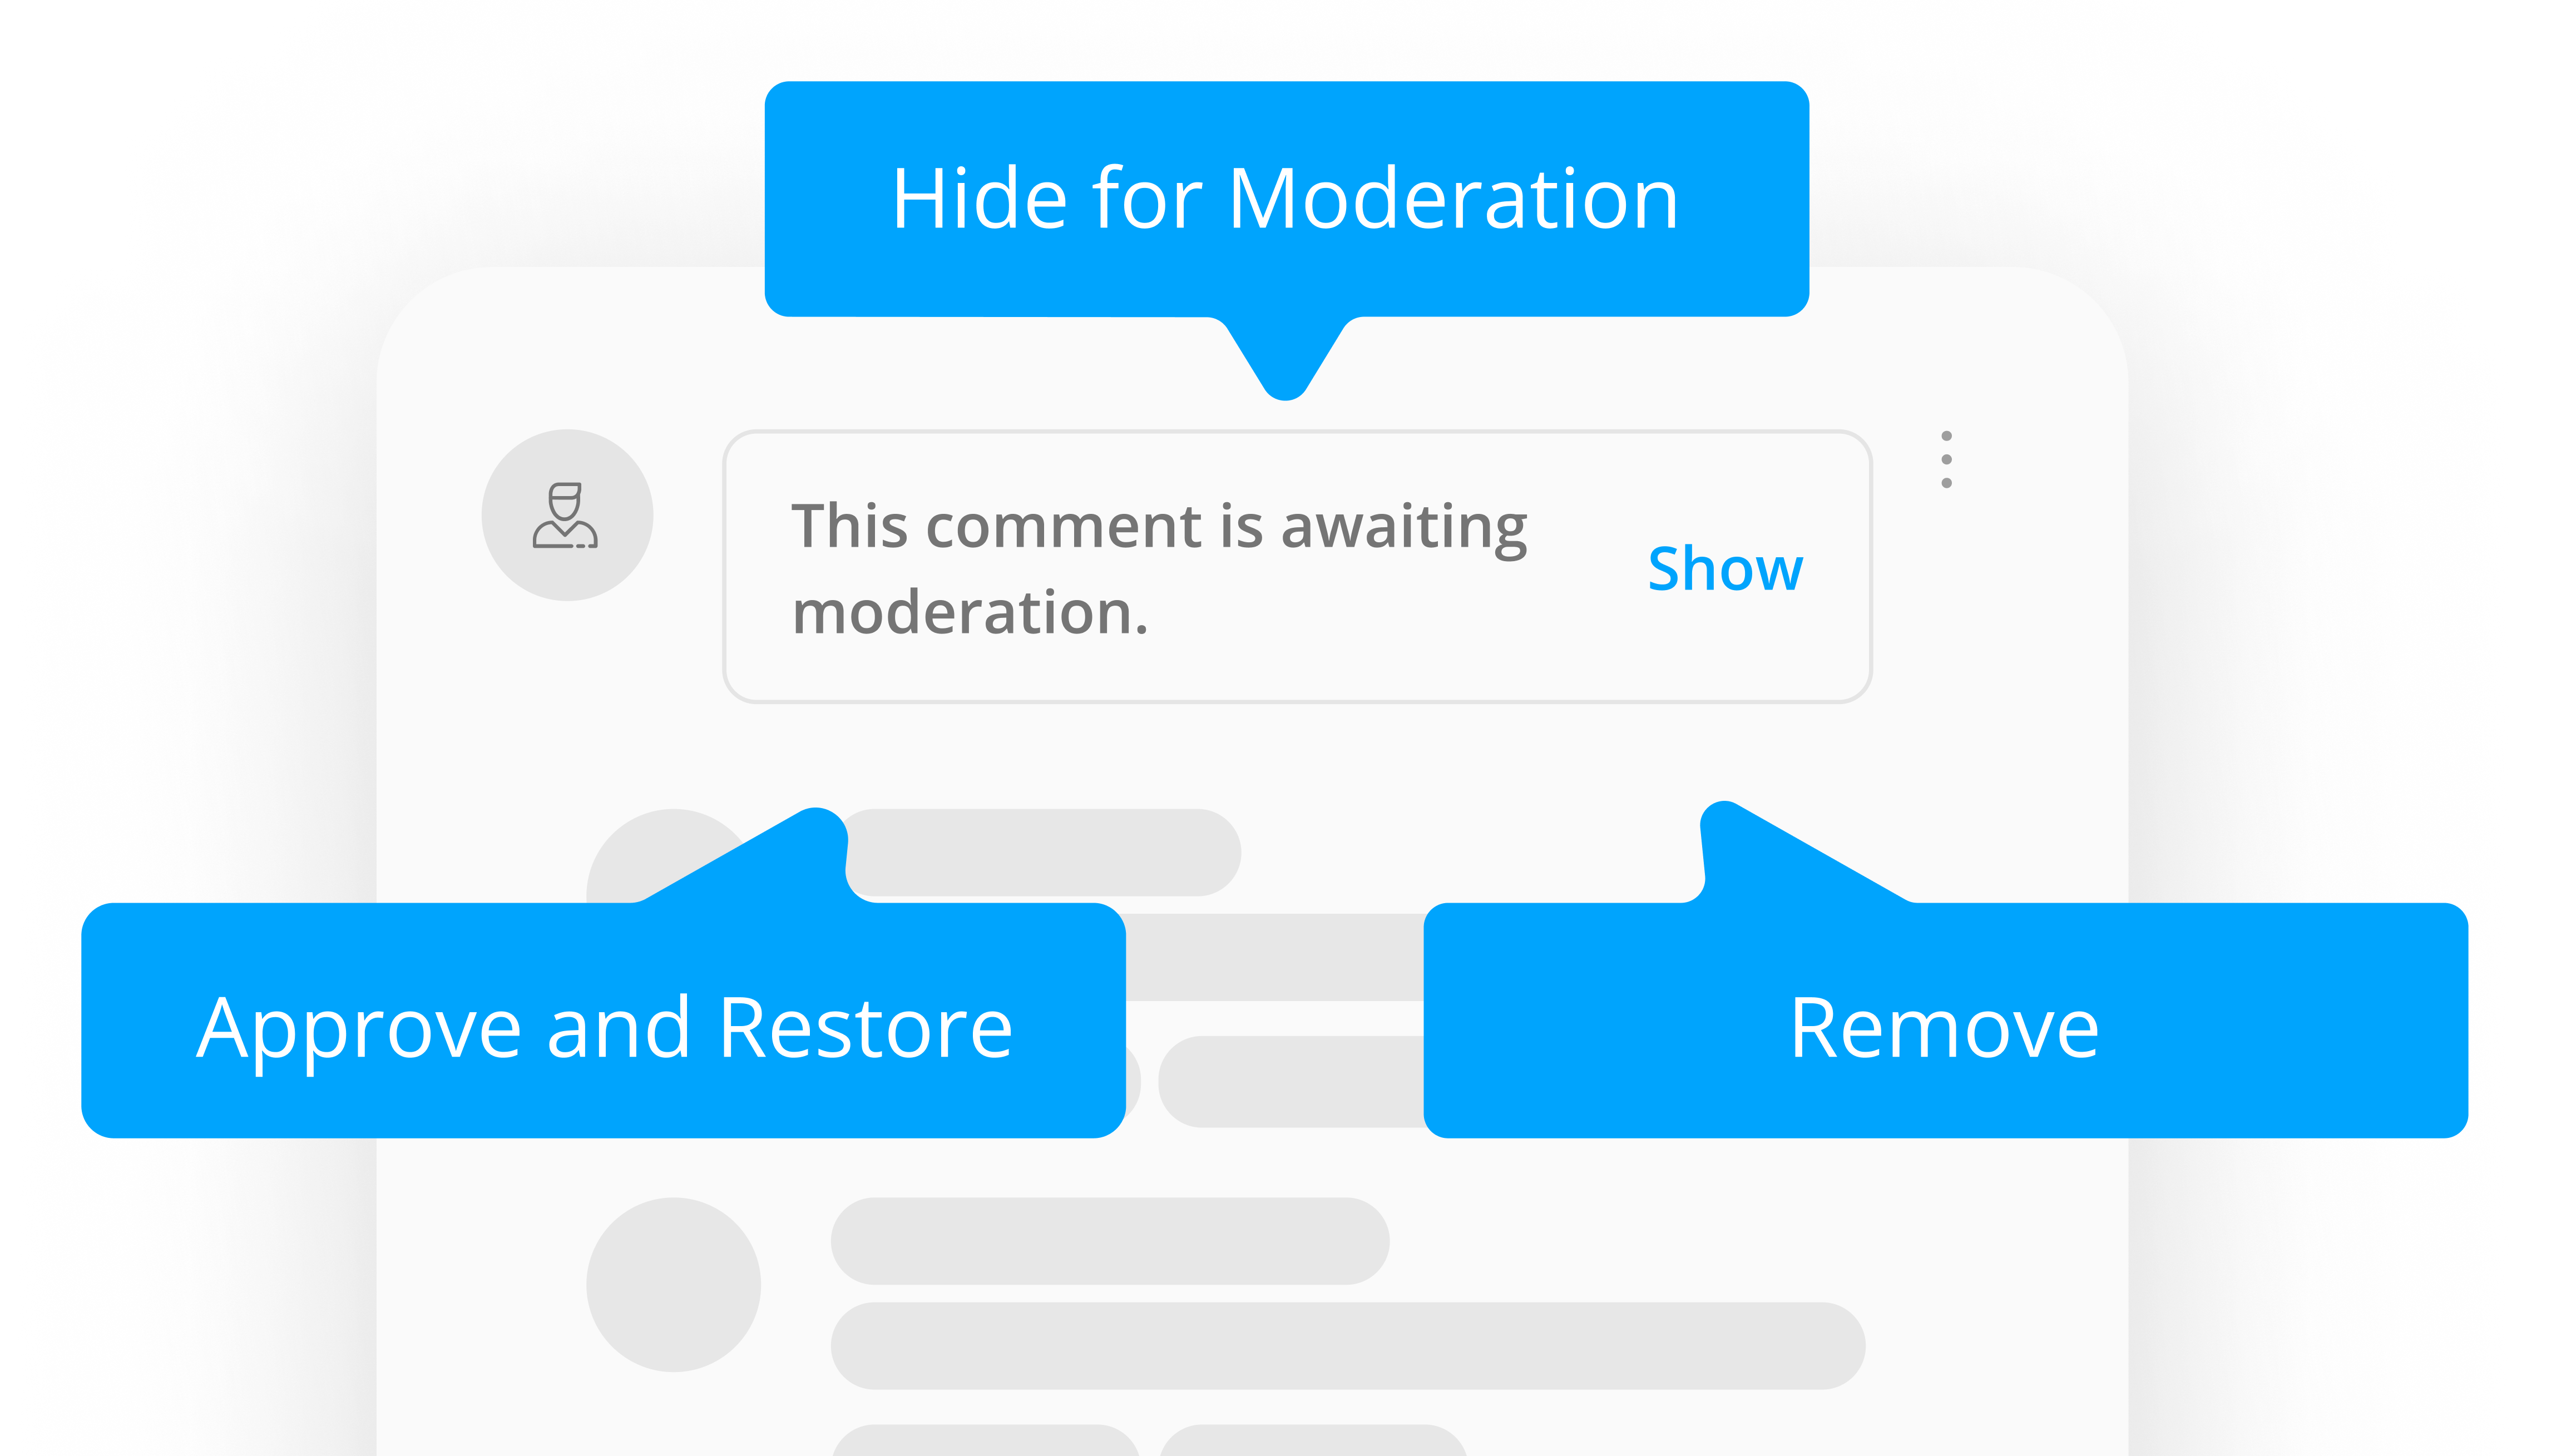 Comment_Moderation_Concept_EN.png